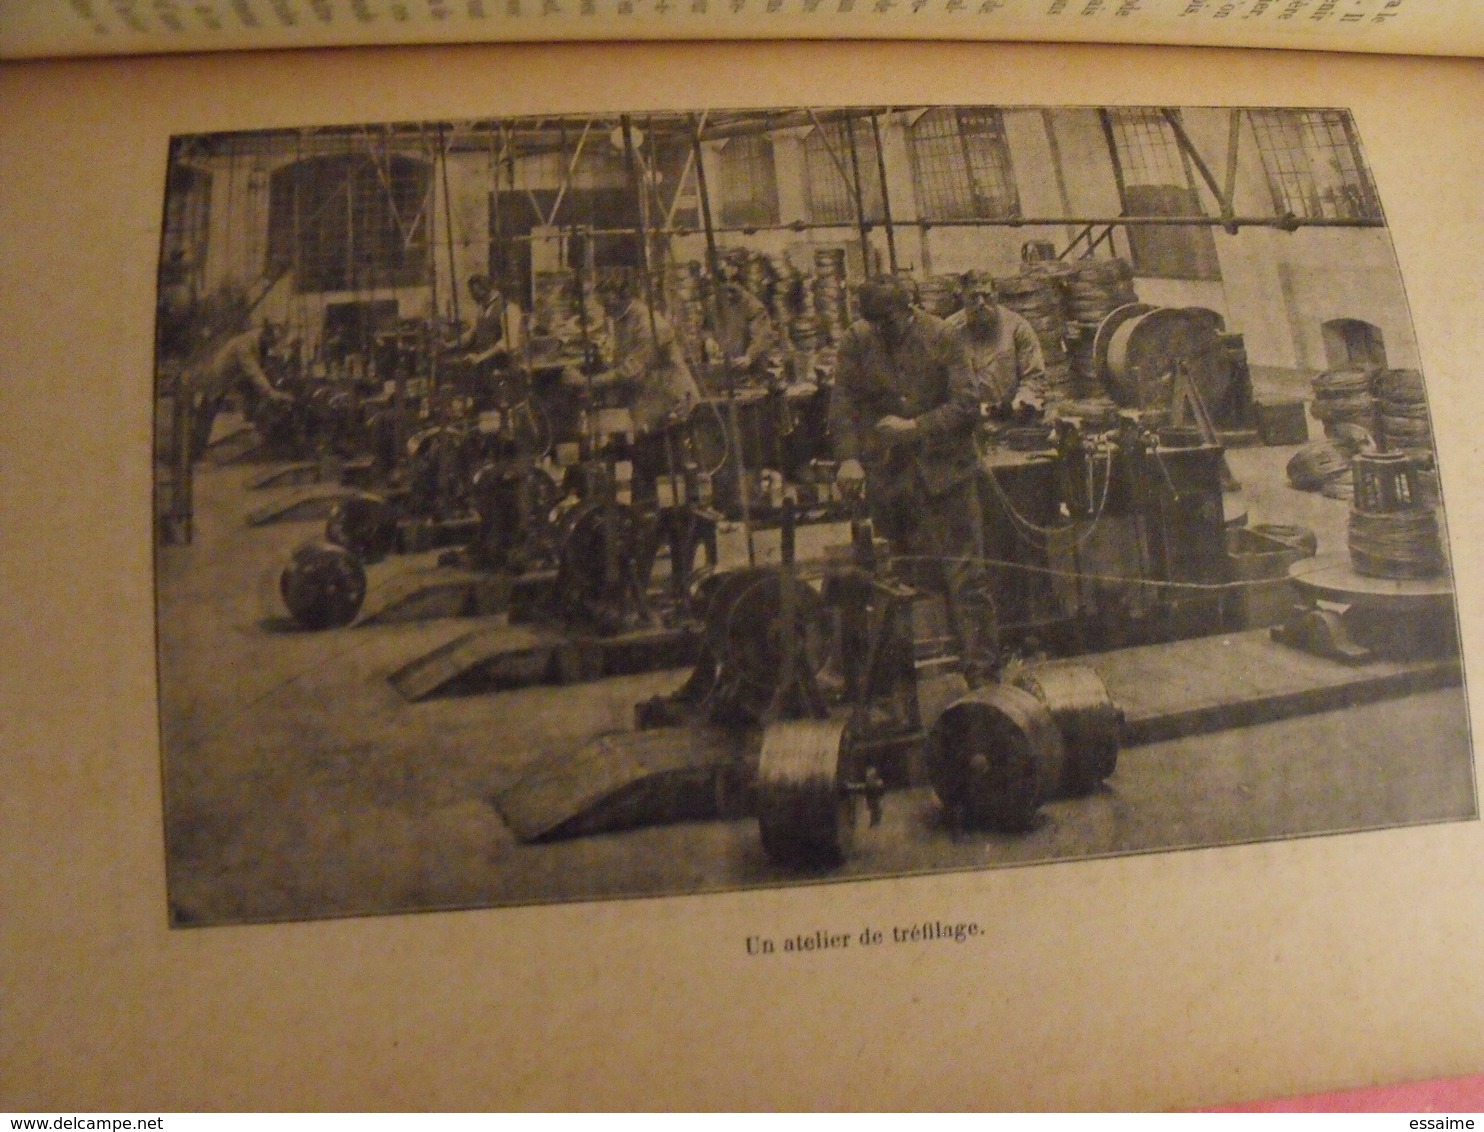 les merveilles de la nature et de l'industrie. daniel bellet. hachette 1909. 58 gravures. train chemin de fer